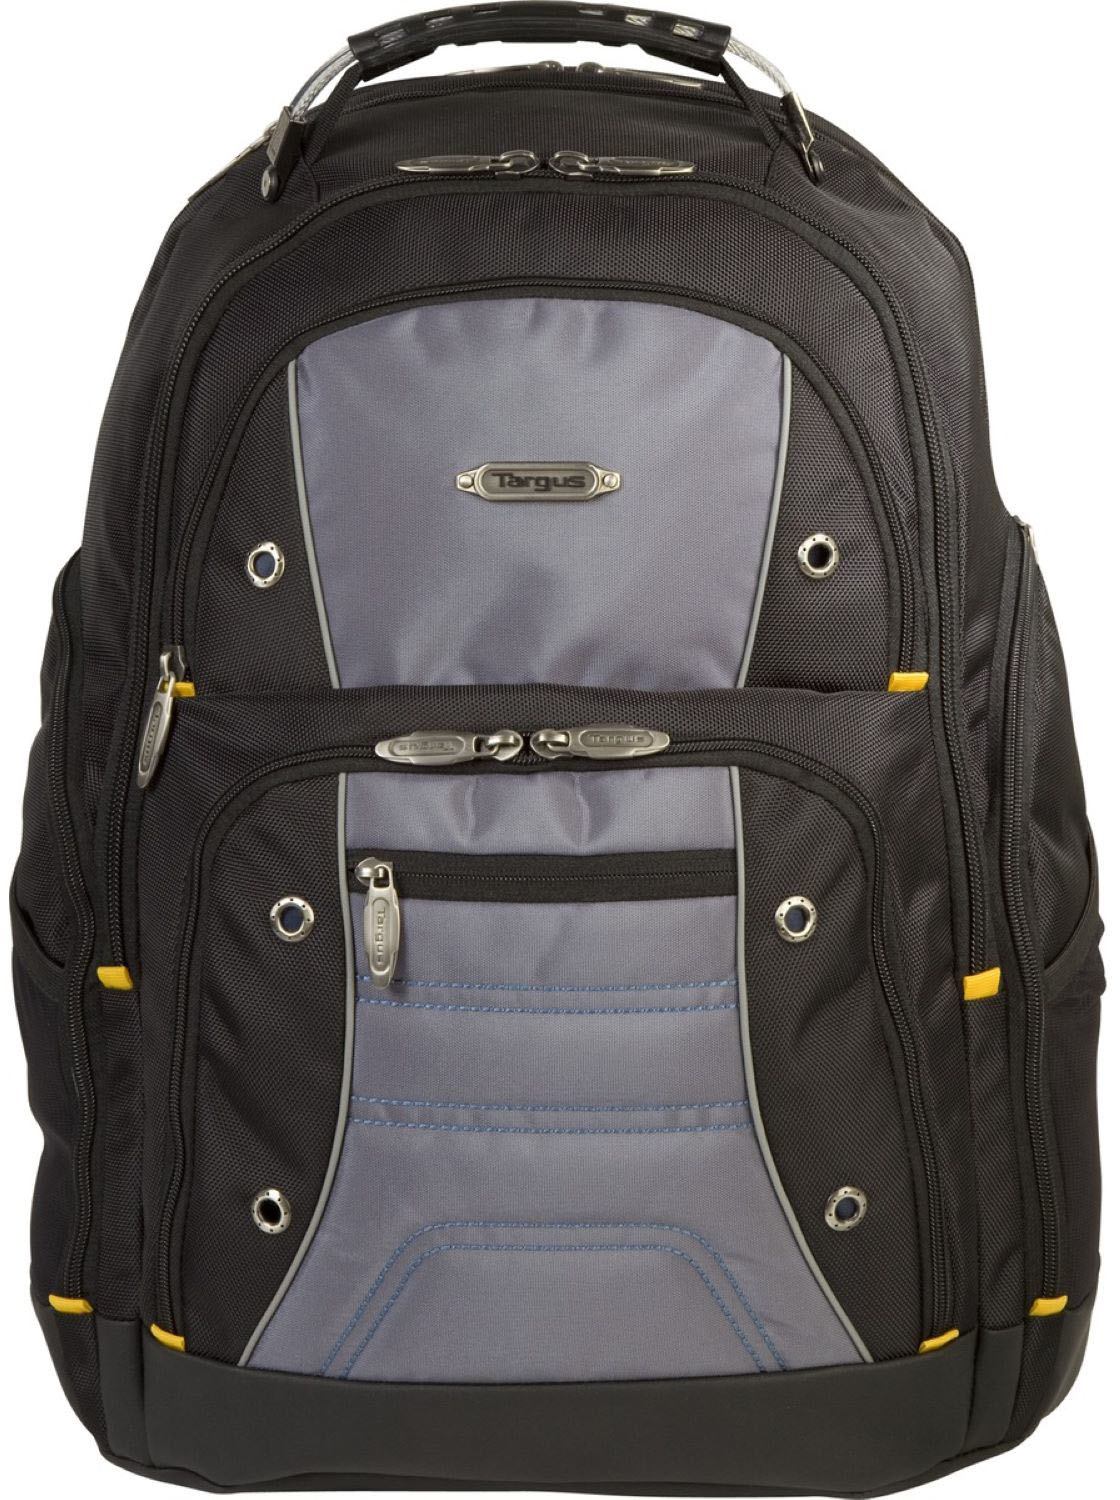 Targus 16” Drifter II Laptop Backpack - Black $34.99